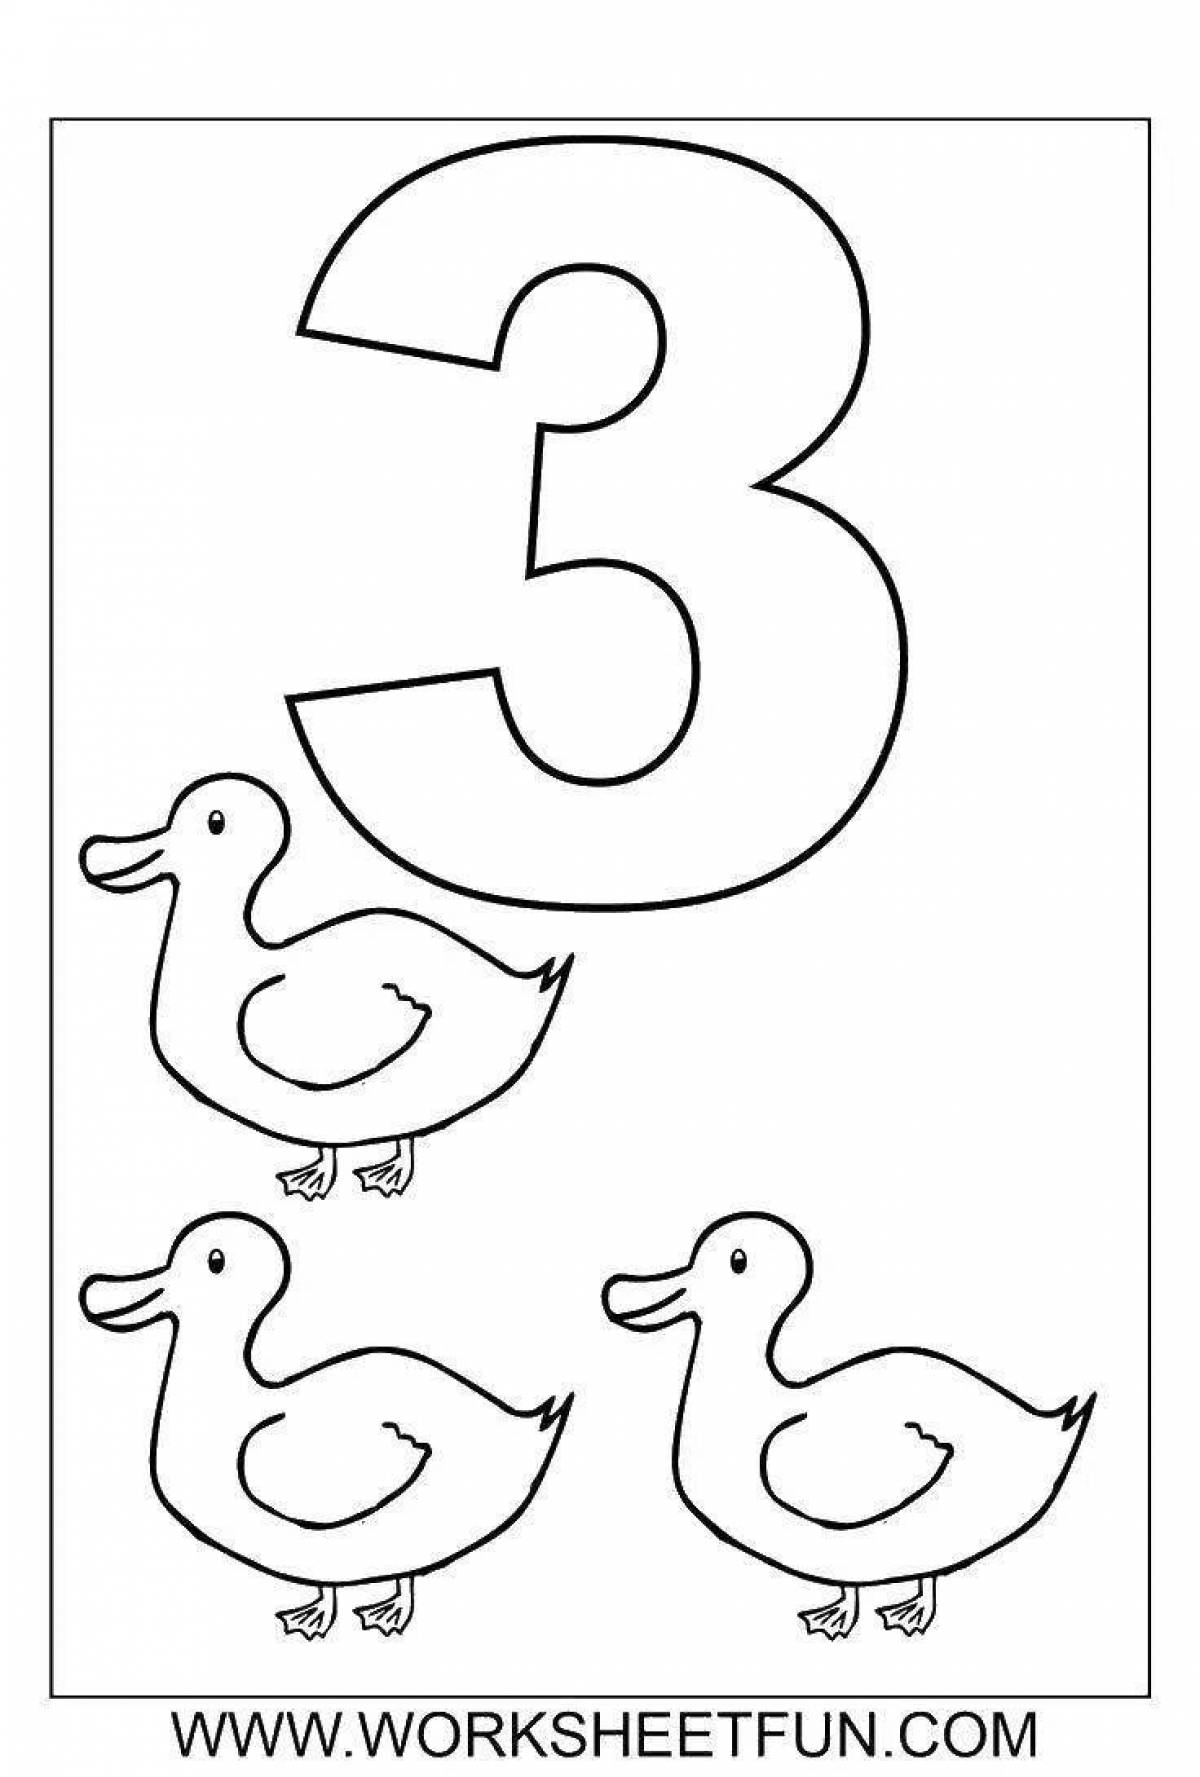 Joyful number 3 coloring book for preschoolers